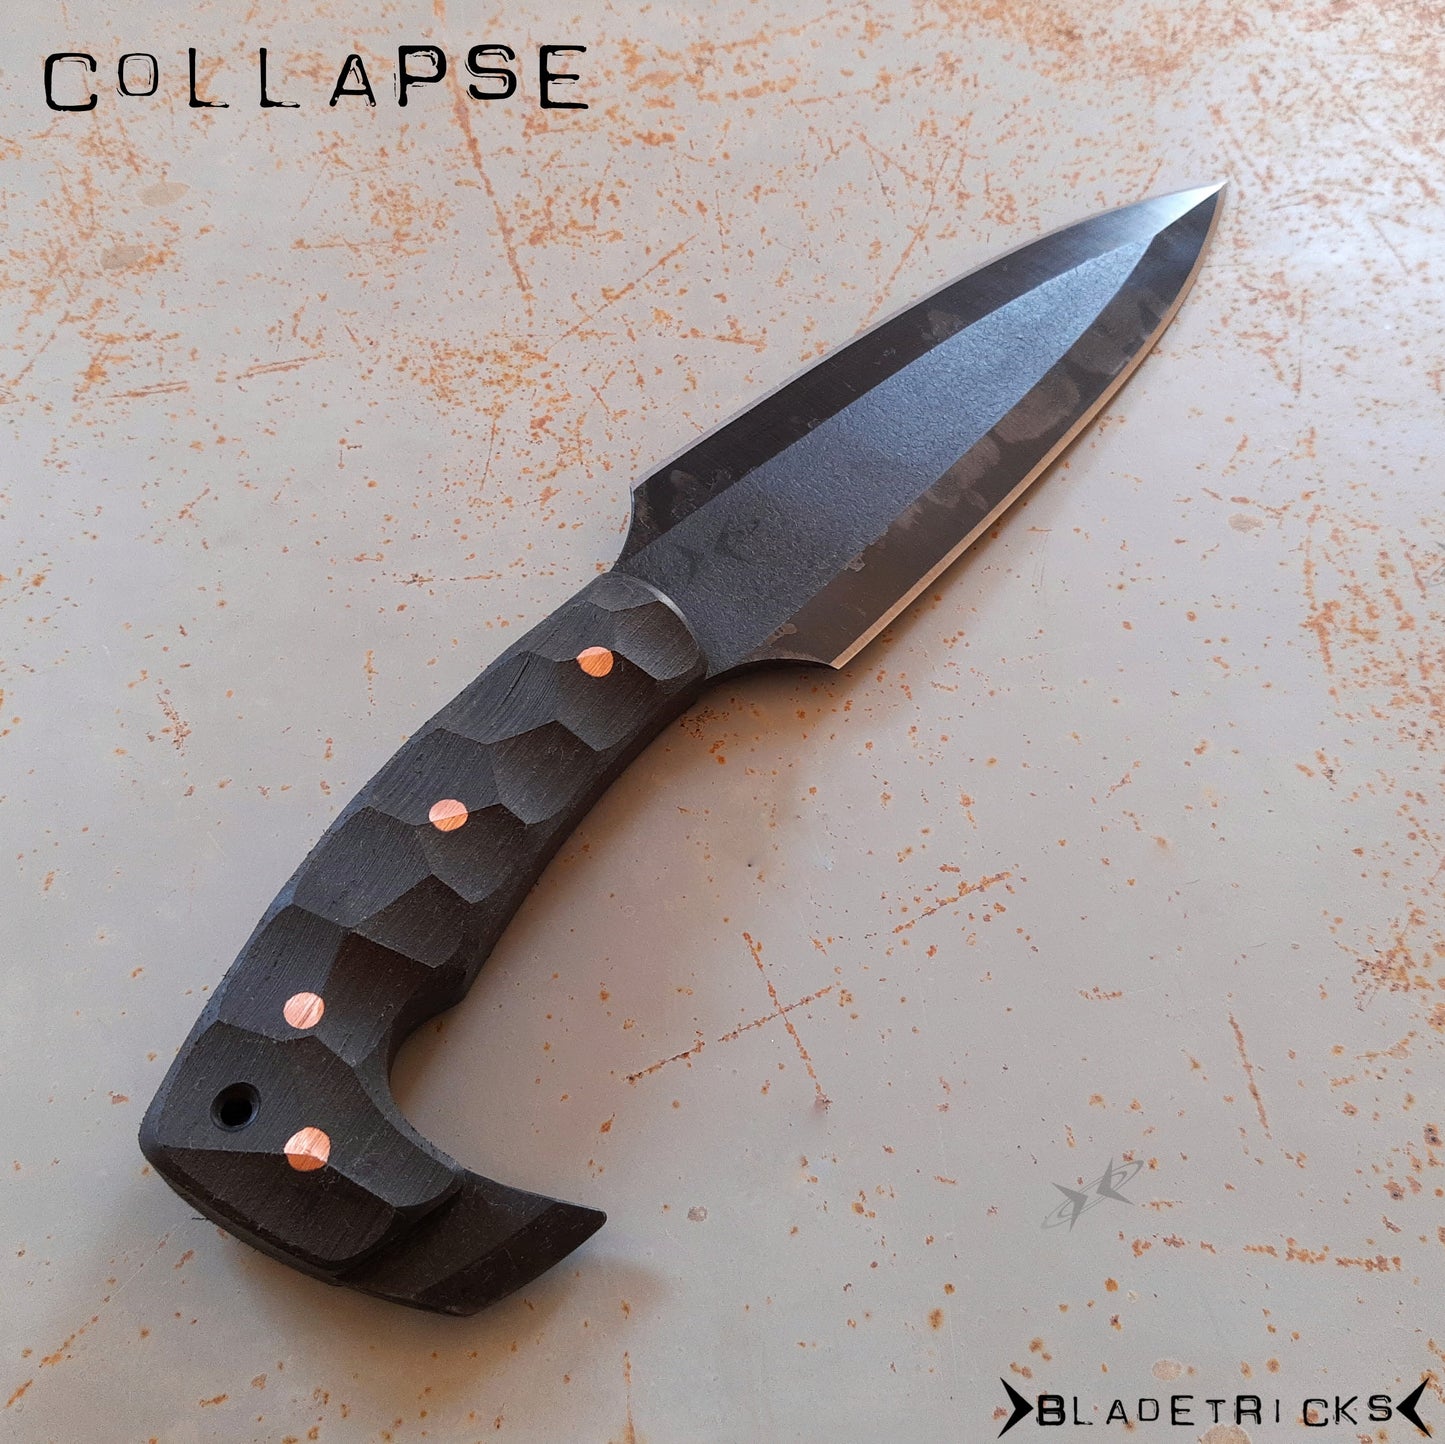 BLADETRICKS CUSTOM COLLAPSE DOUBLE EDGE KNIFE